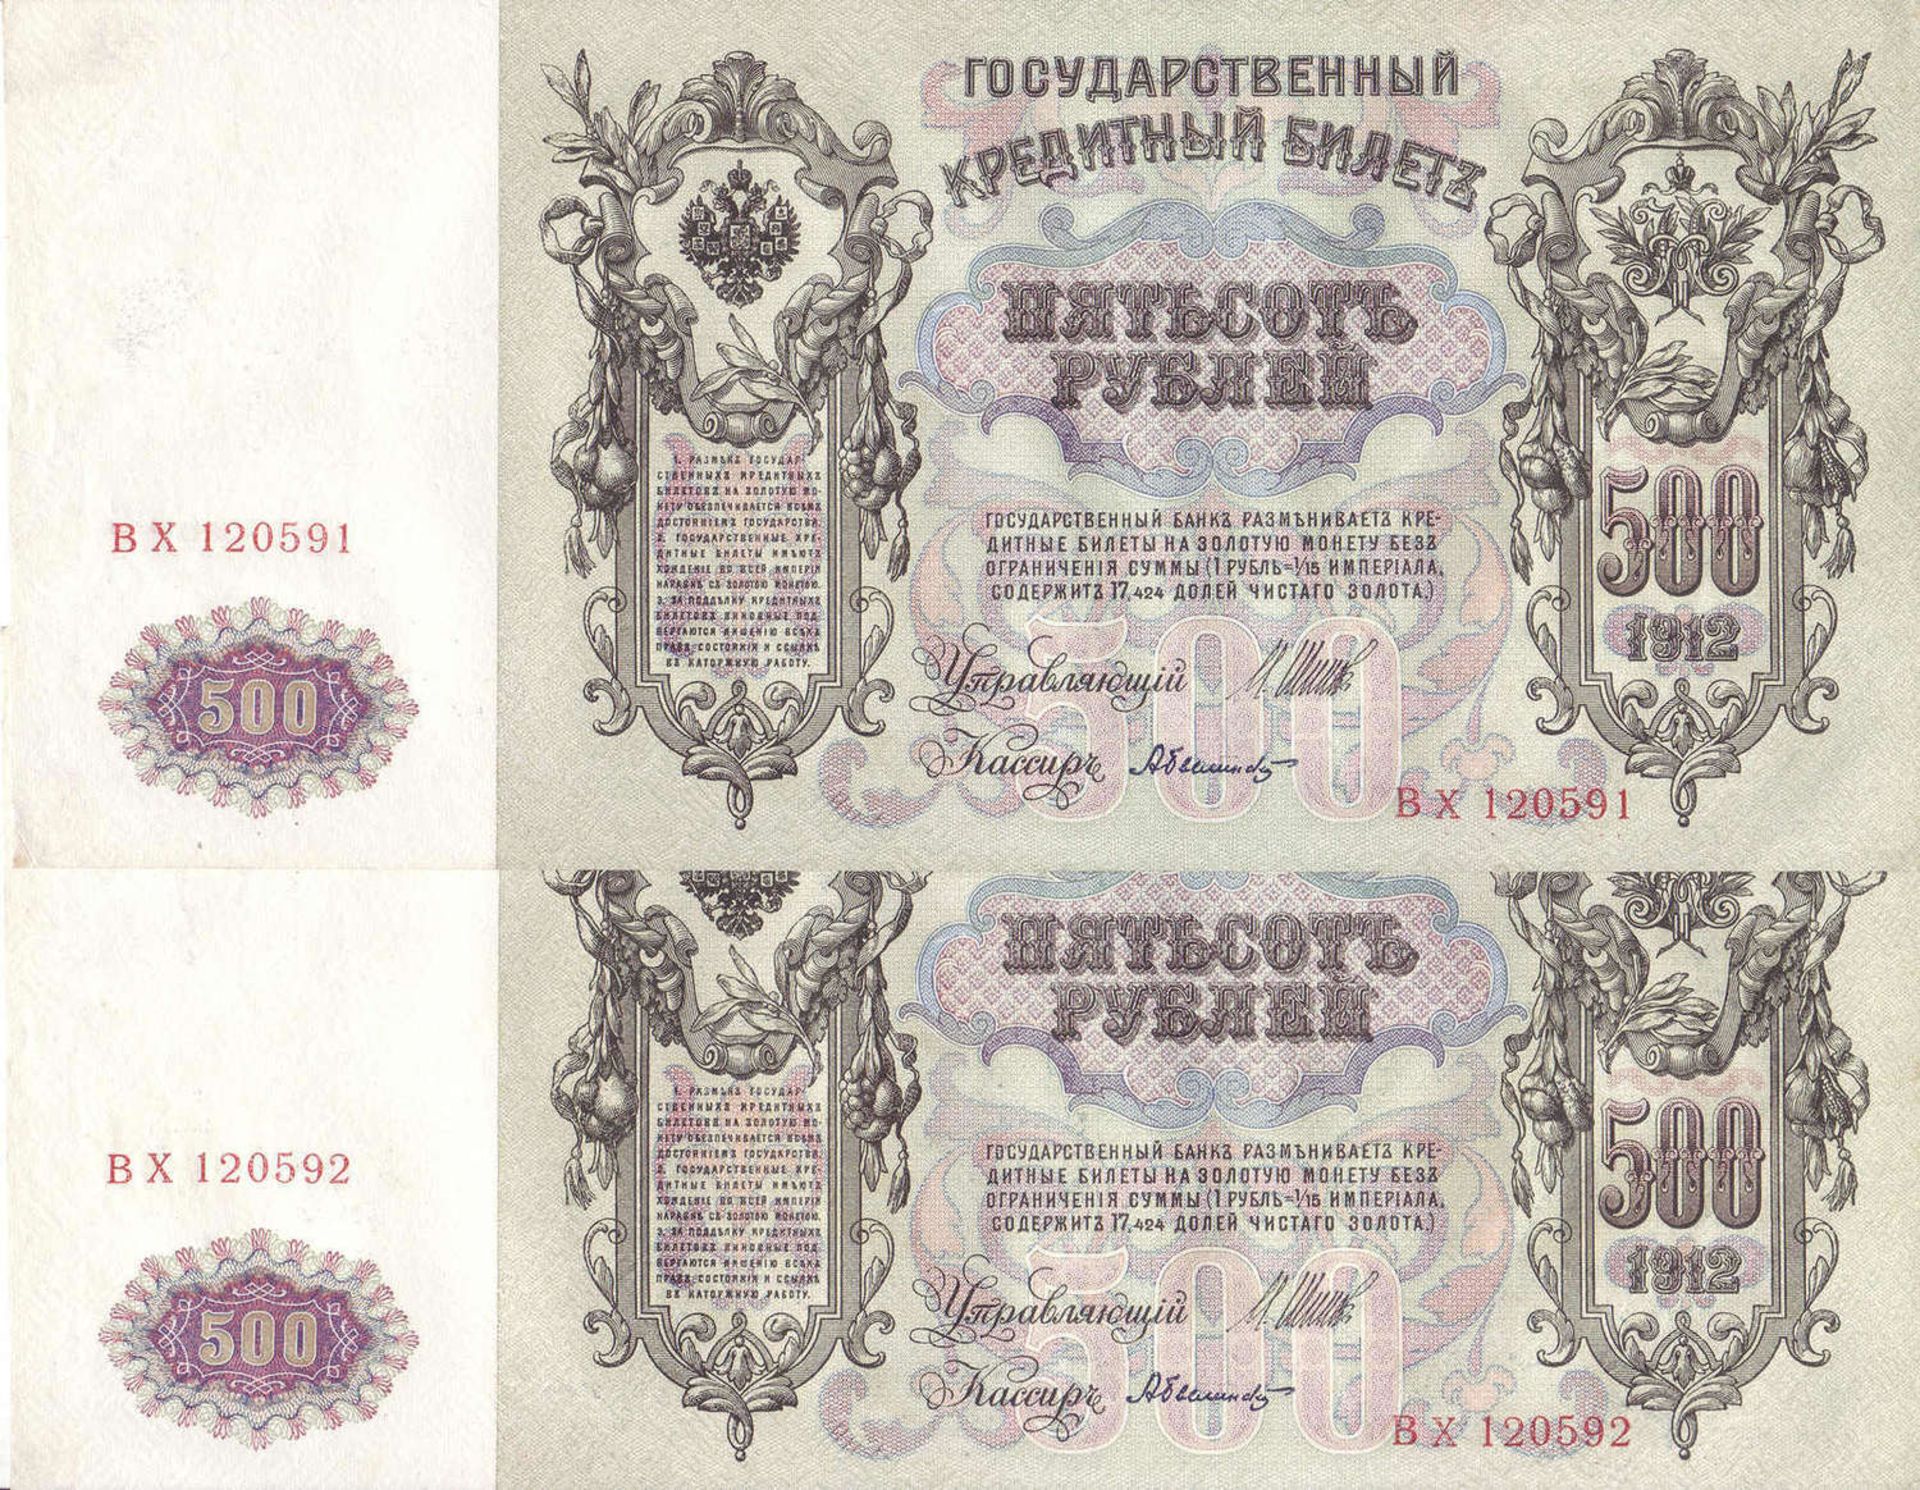 Russland Zarenreich 1910/12, 1 x 100 Rubel und 2 x 500 Rubel Banknote. 500 Rubel sehr guter Zustand, - Bild 4 aus 4